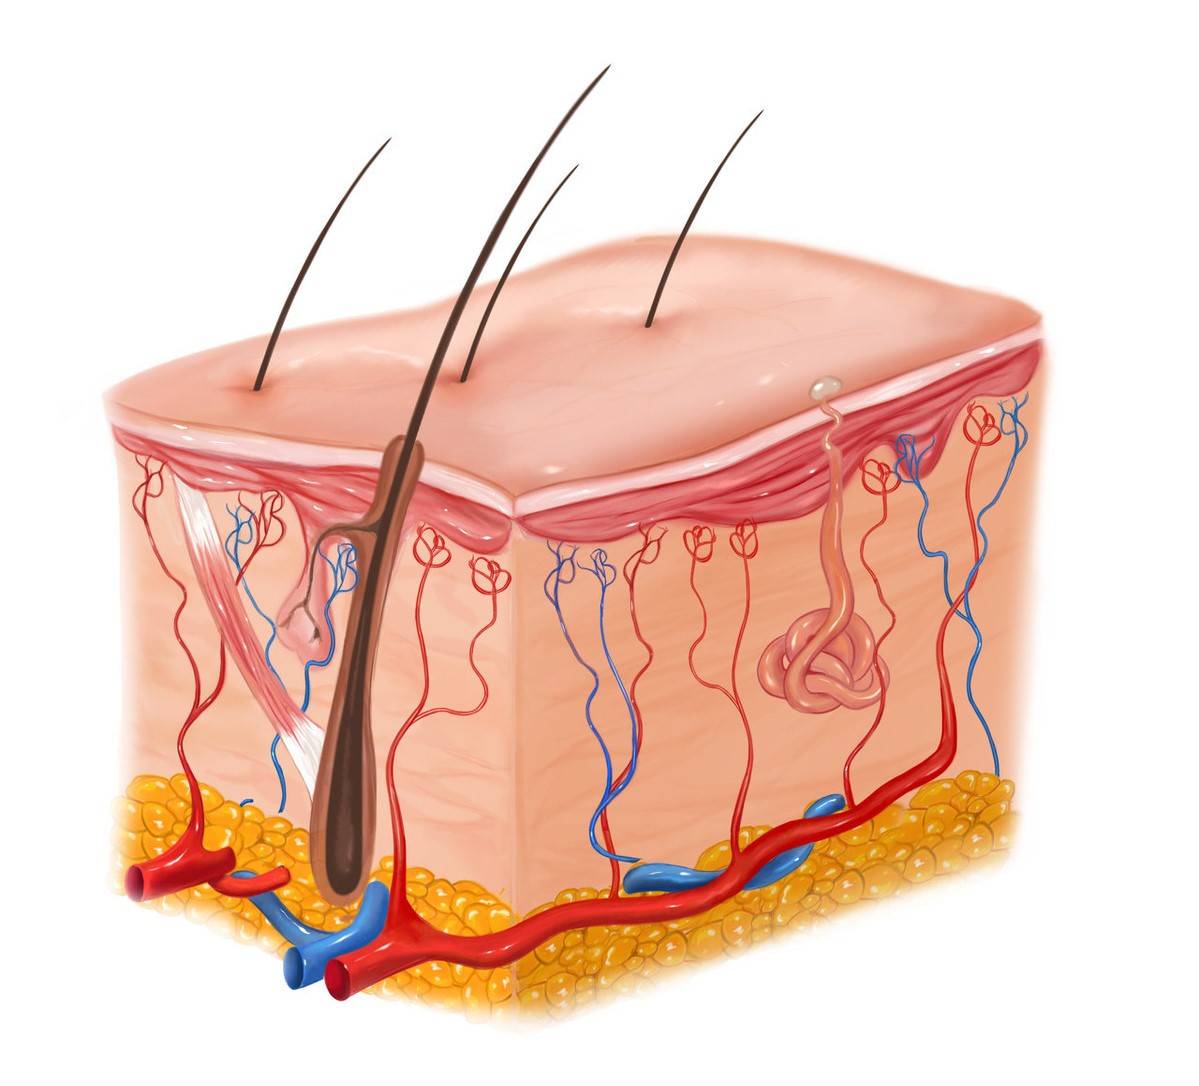 我们的皮肤,是由皮下组织,真皮层,表皮层构成,表皮的最外层凸起的